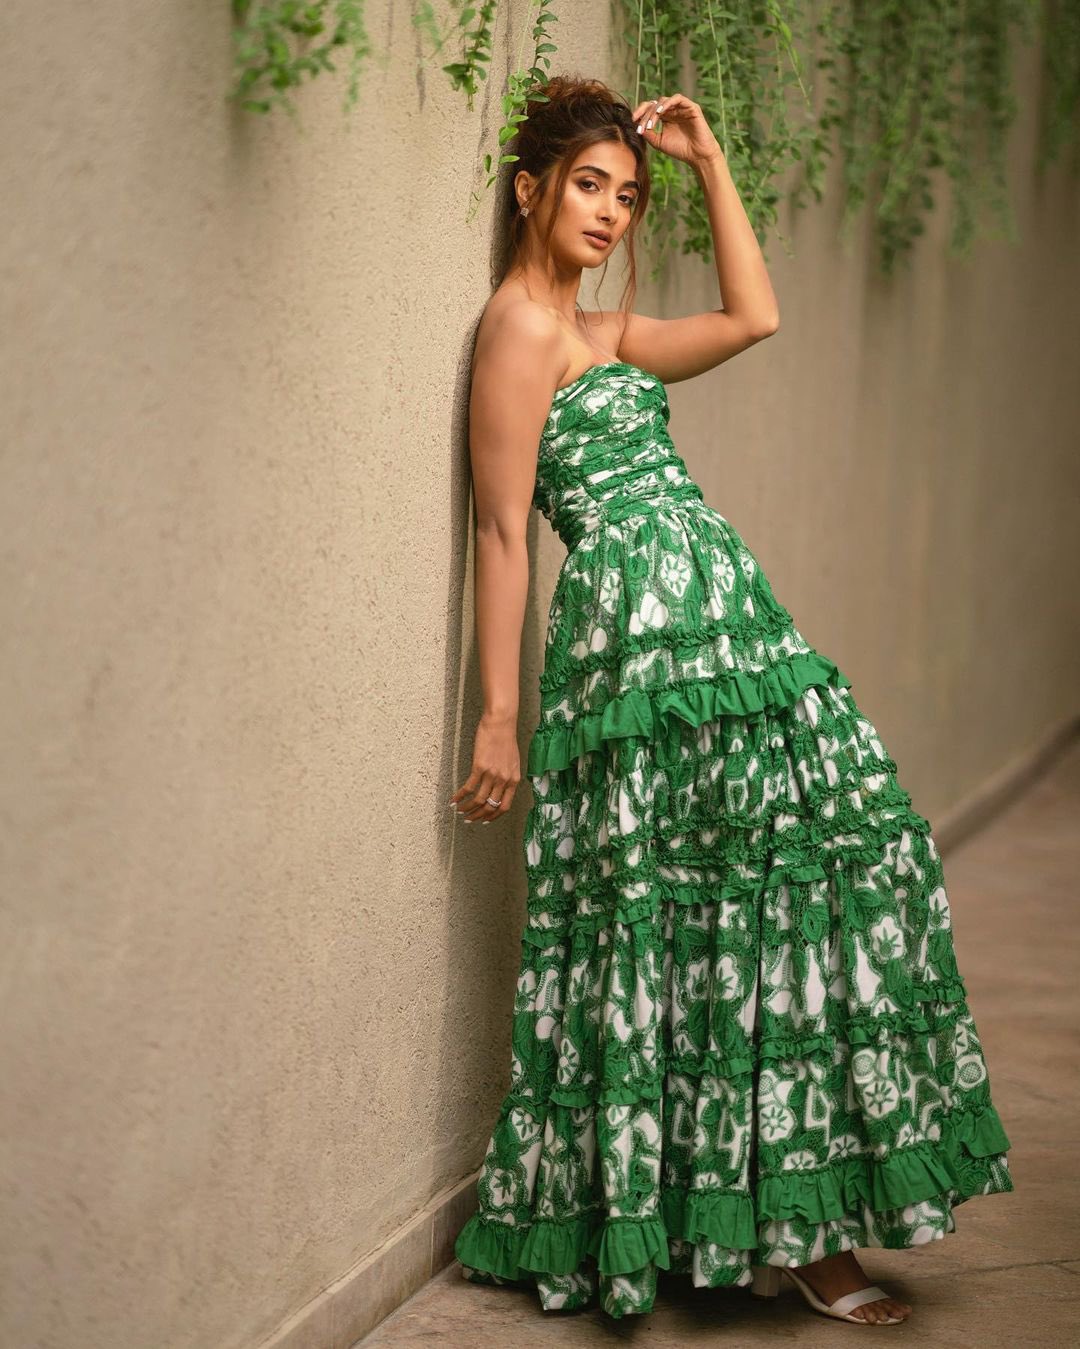 pooja hegde green dress